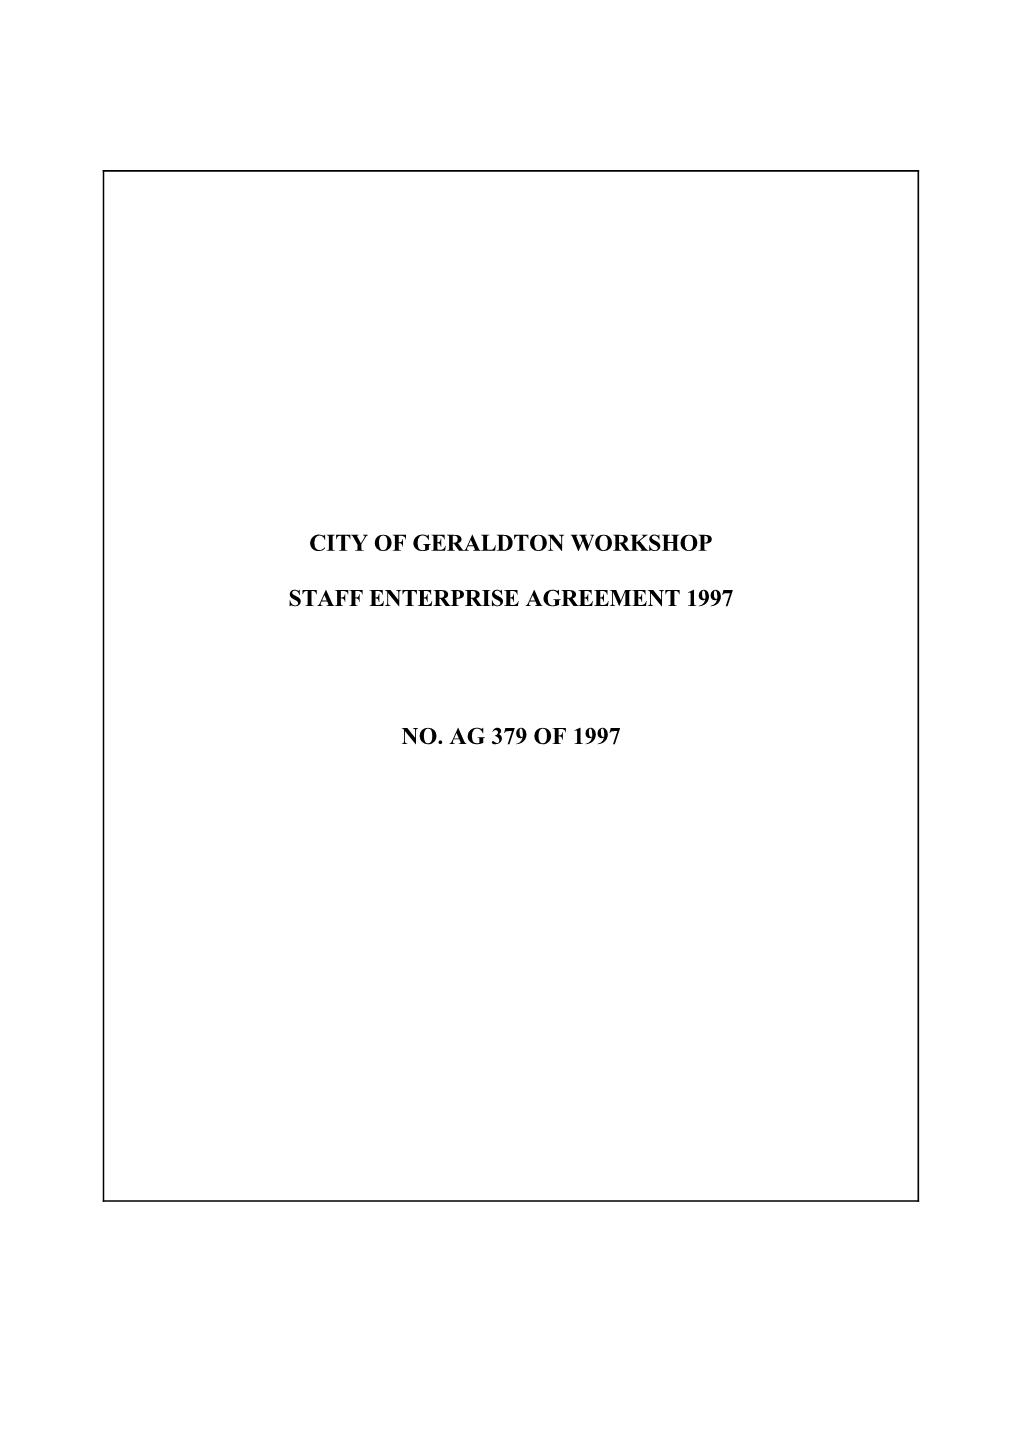 City of Geraldton Workshop Staff Enterprise Agreement 1997